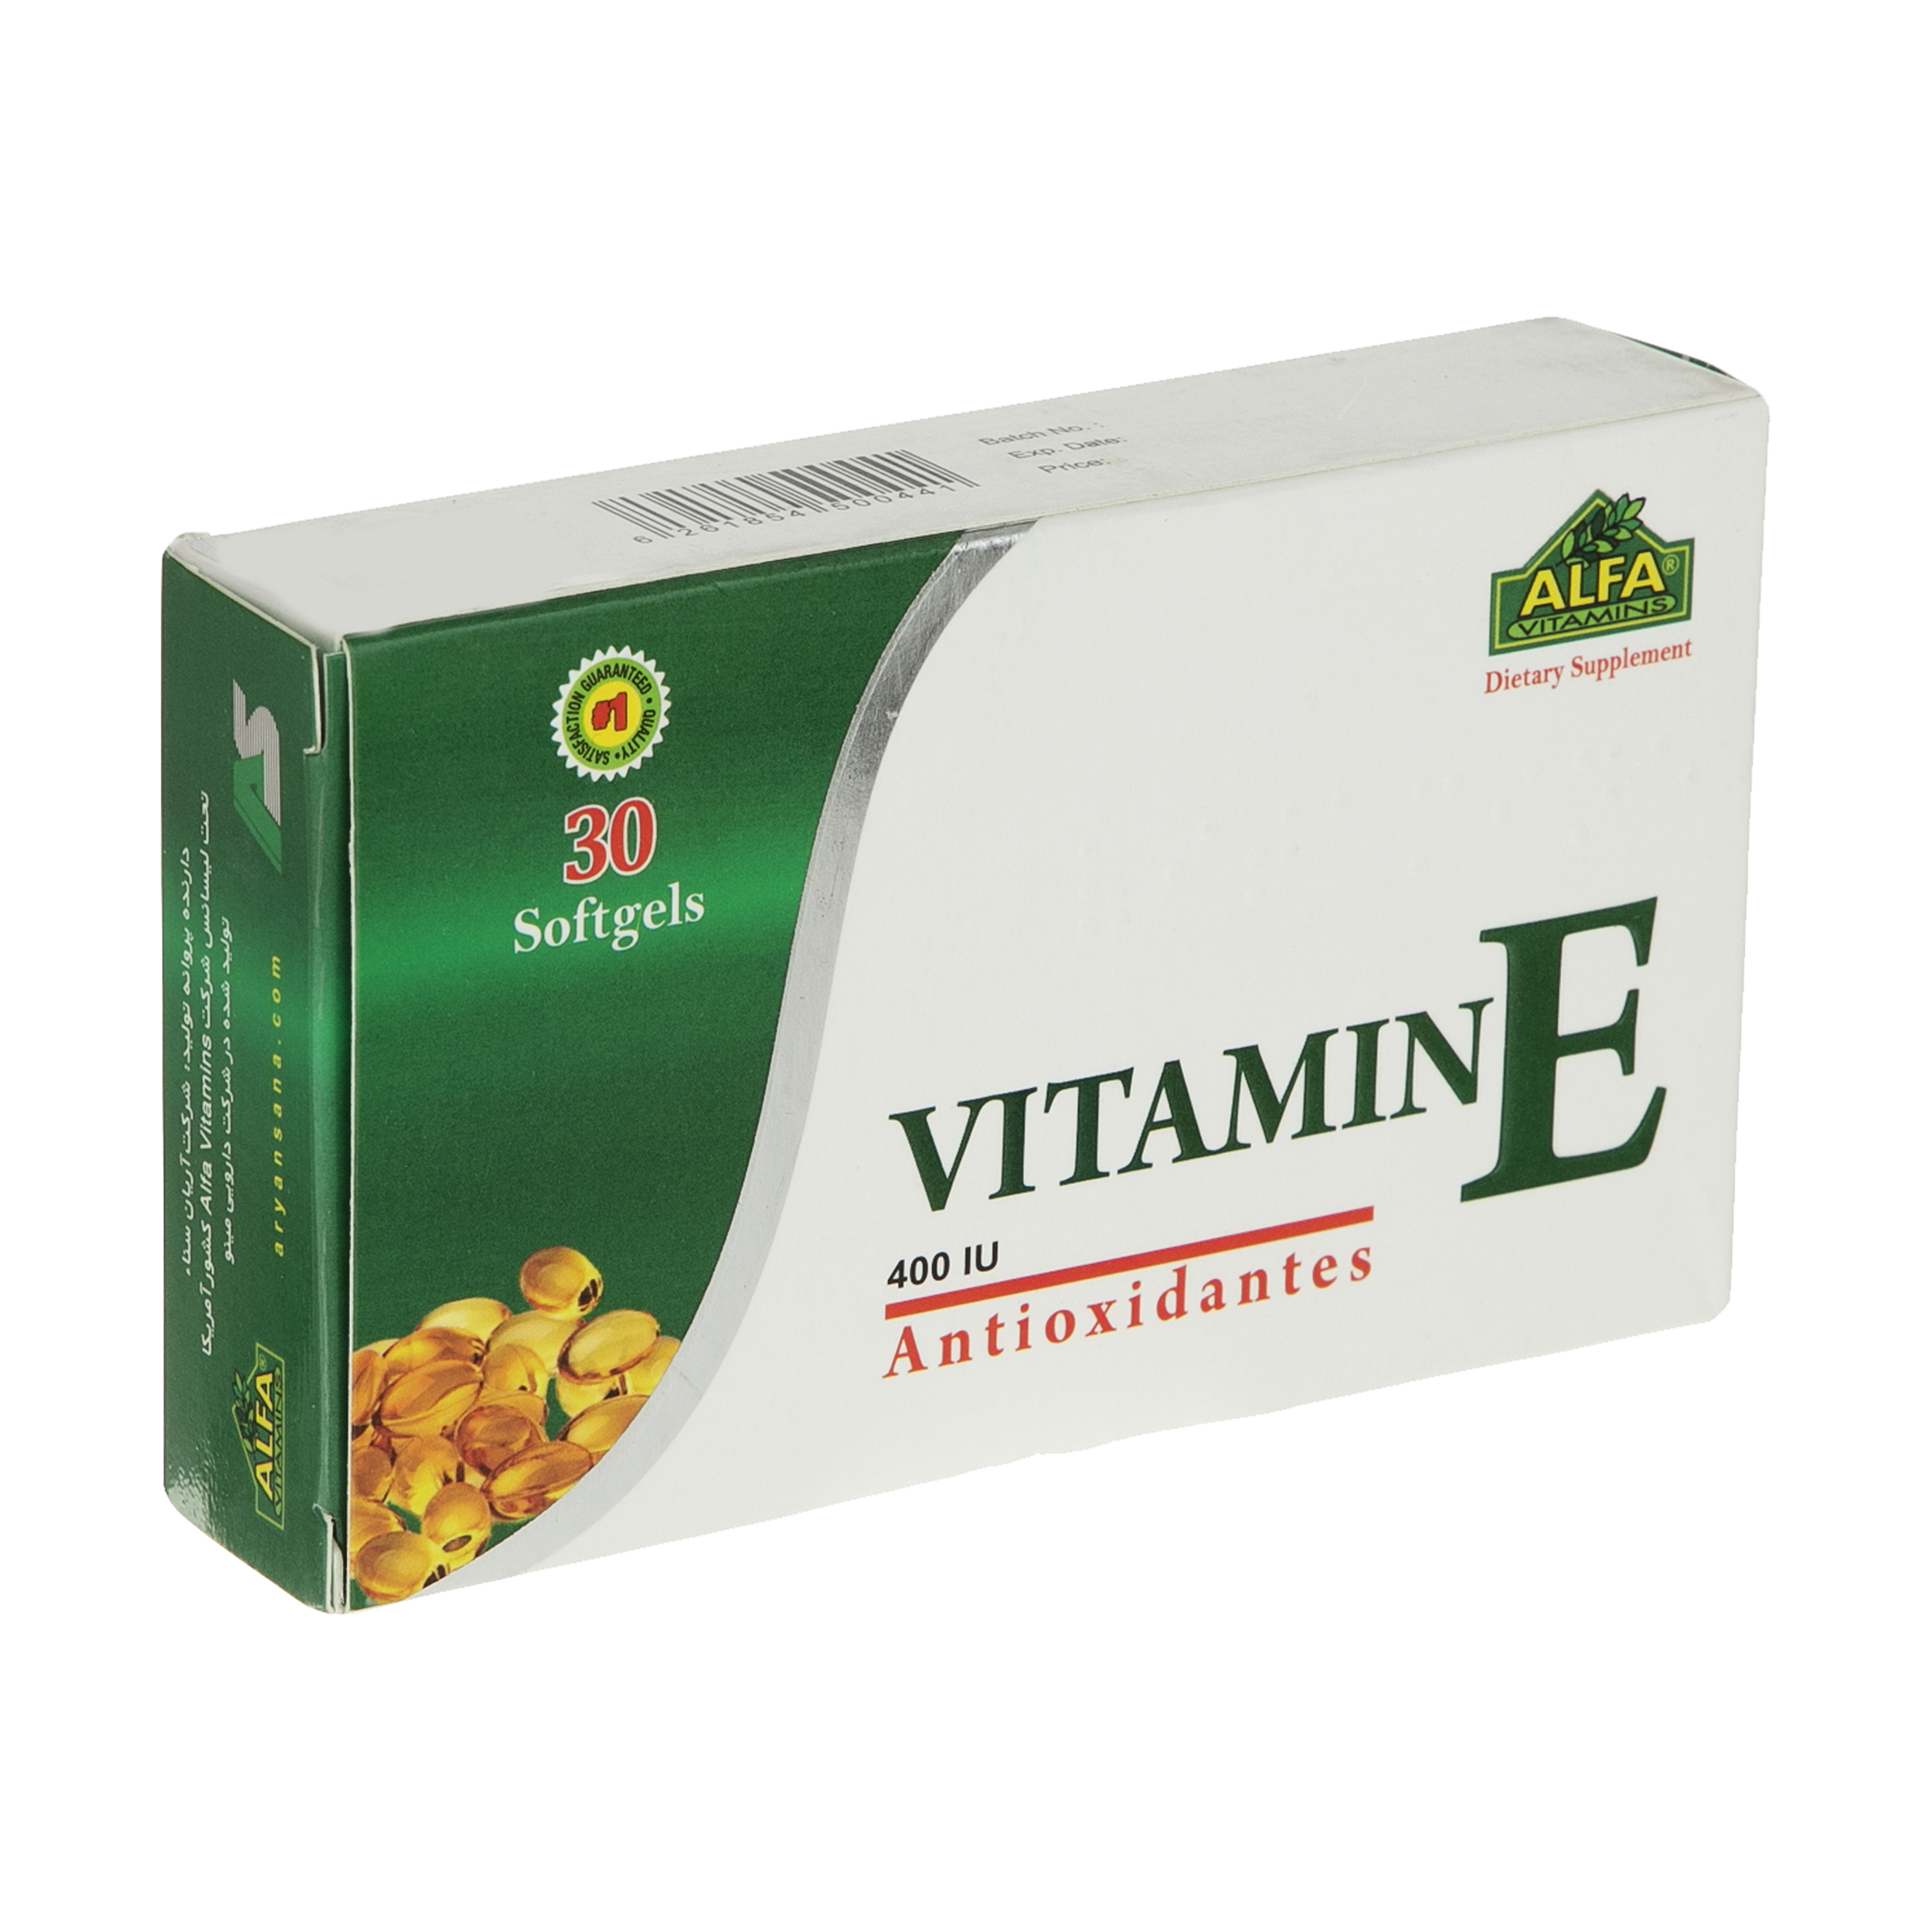 سافت ژل ویتامین E 400 واحد آلفا ویتامینز بسته 30 عددی 